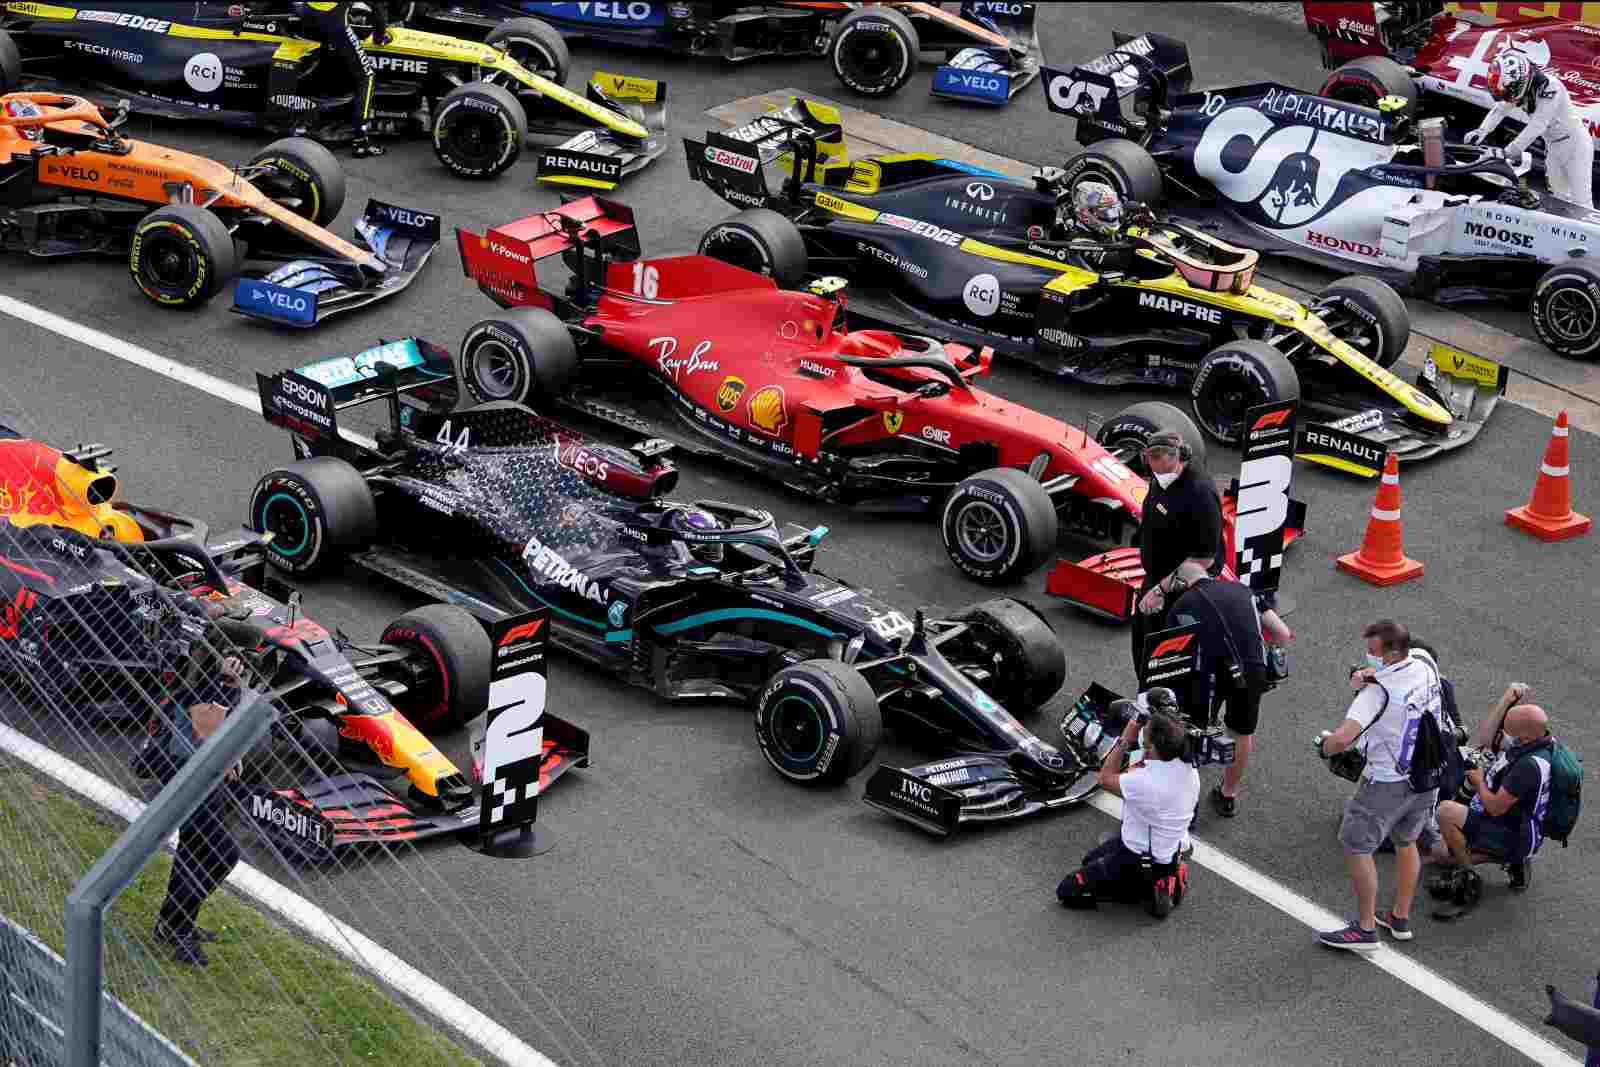 Carros estacionaram no parque fechado, com destaque para a Mercedes de Hamilton com pneu furado